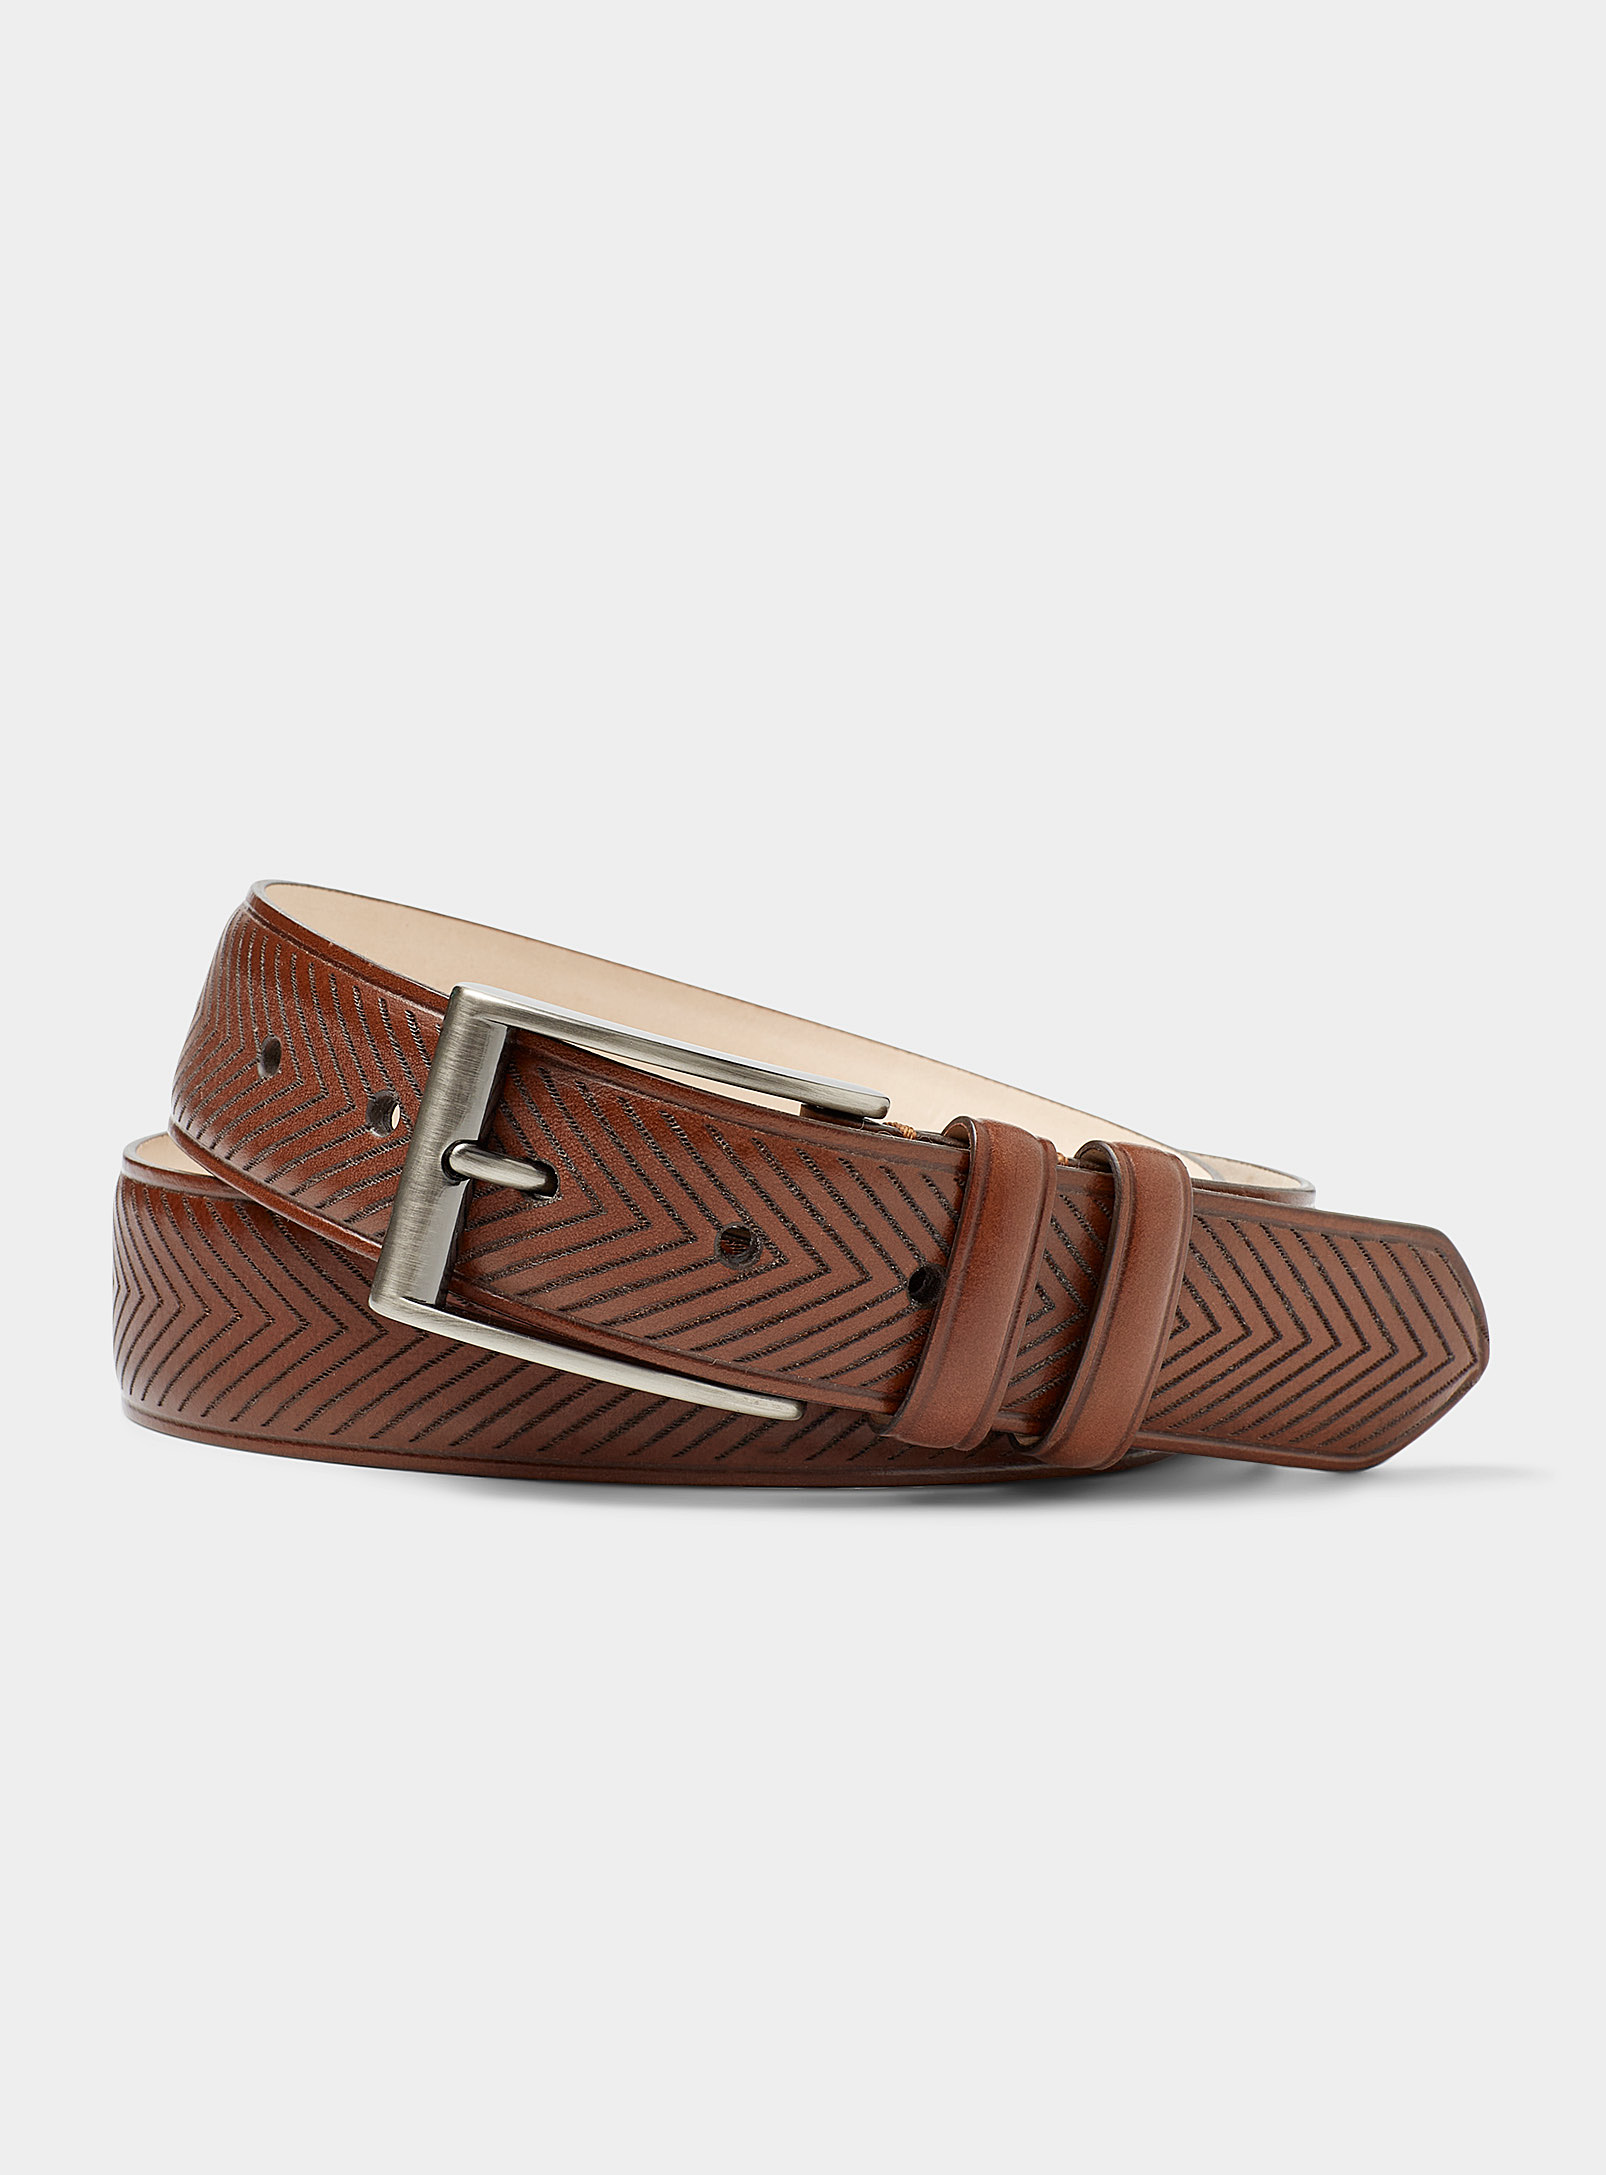 Le 31 - Men's Herringbone brown leather belt